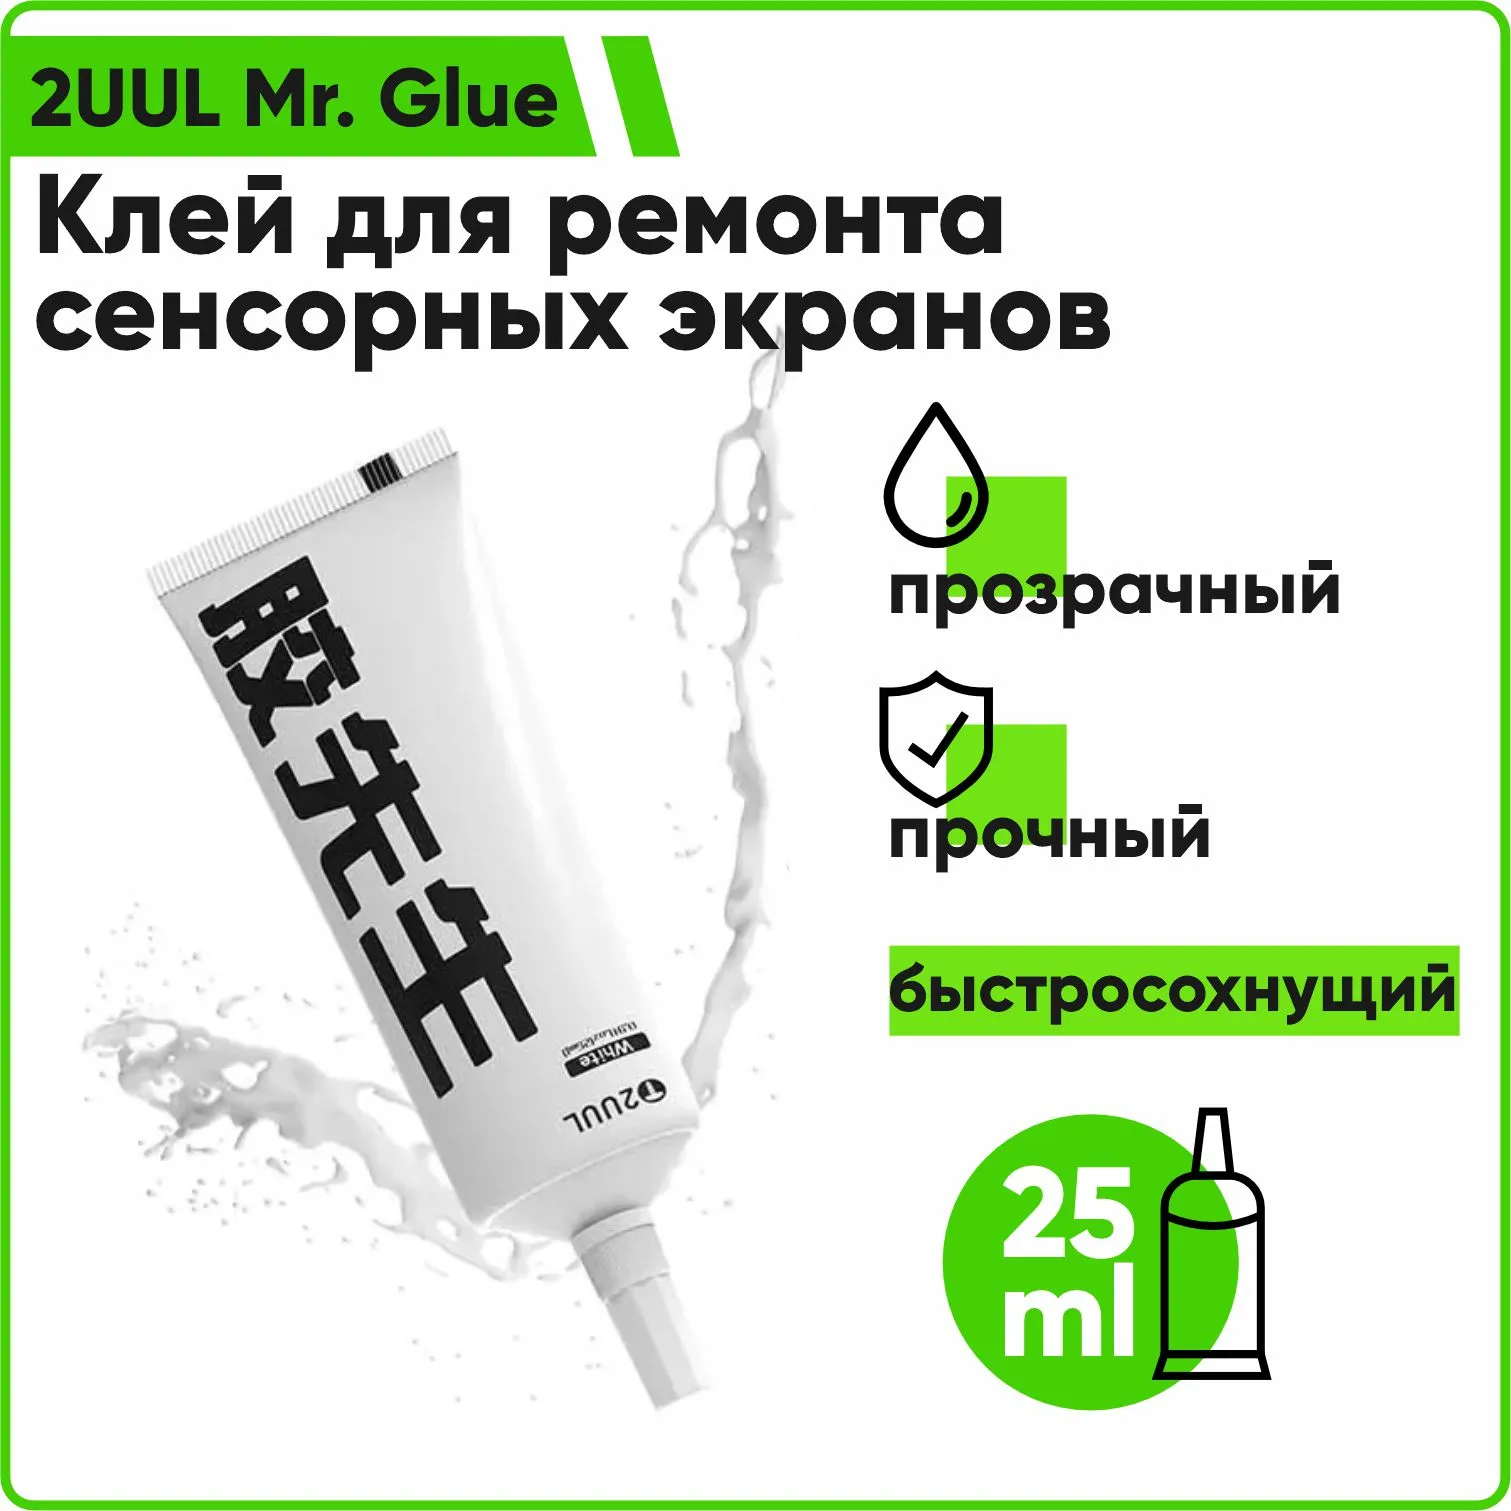 2UUL Mr. Glue быстросохнущий клей для ремонта сенсорных экранов 25мл (прозрачный)